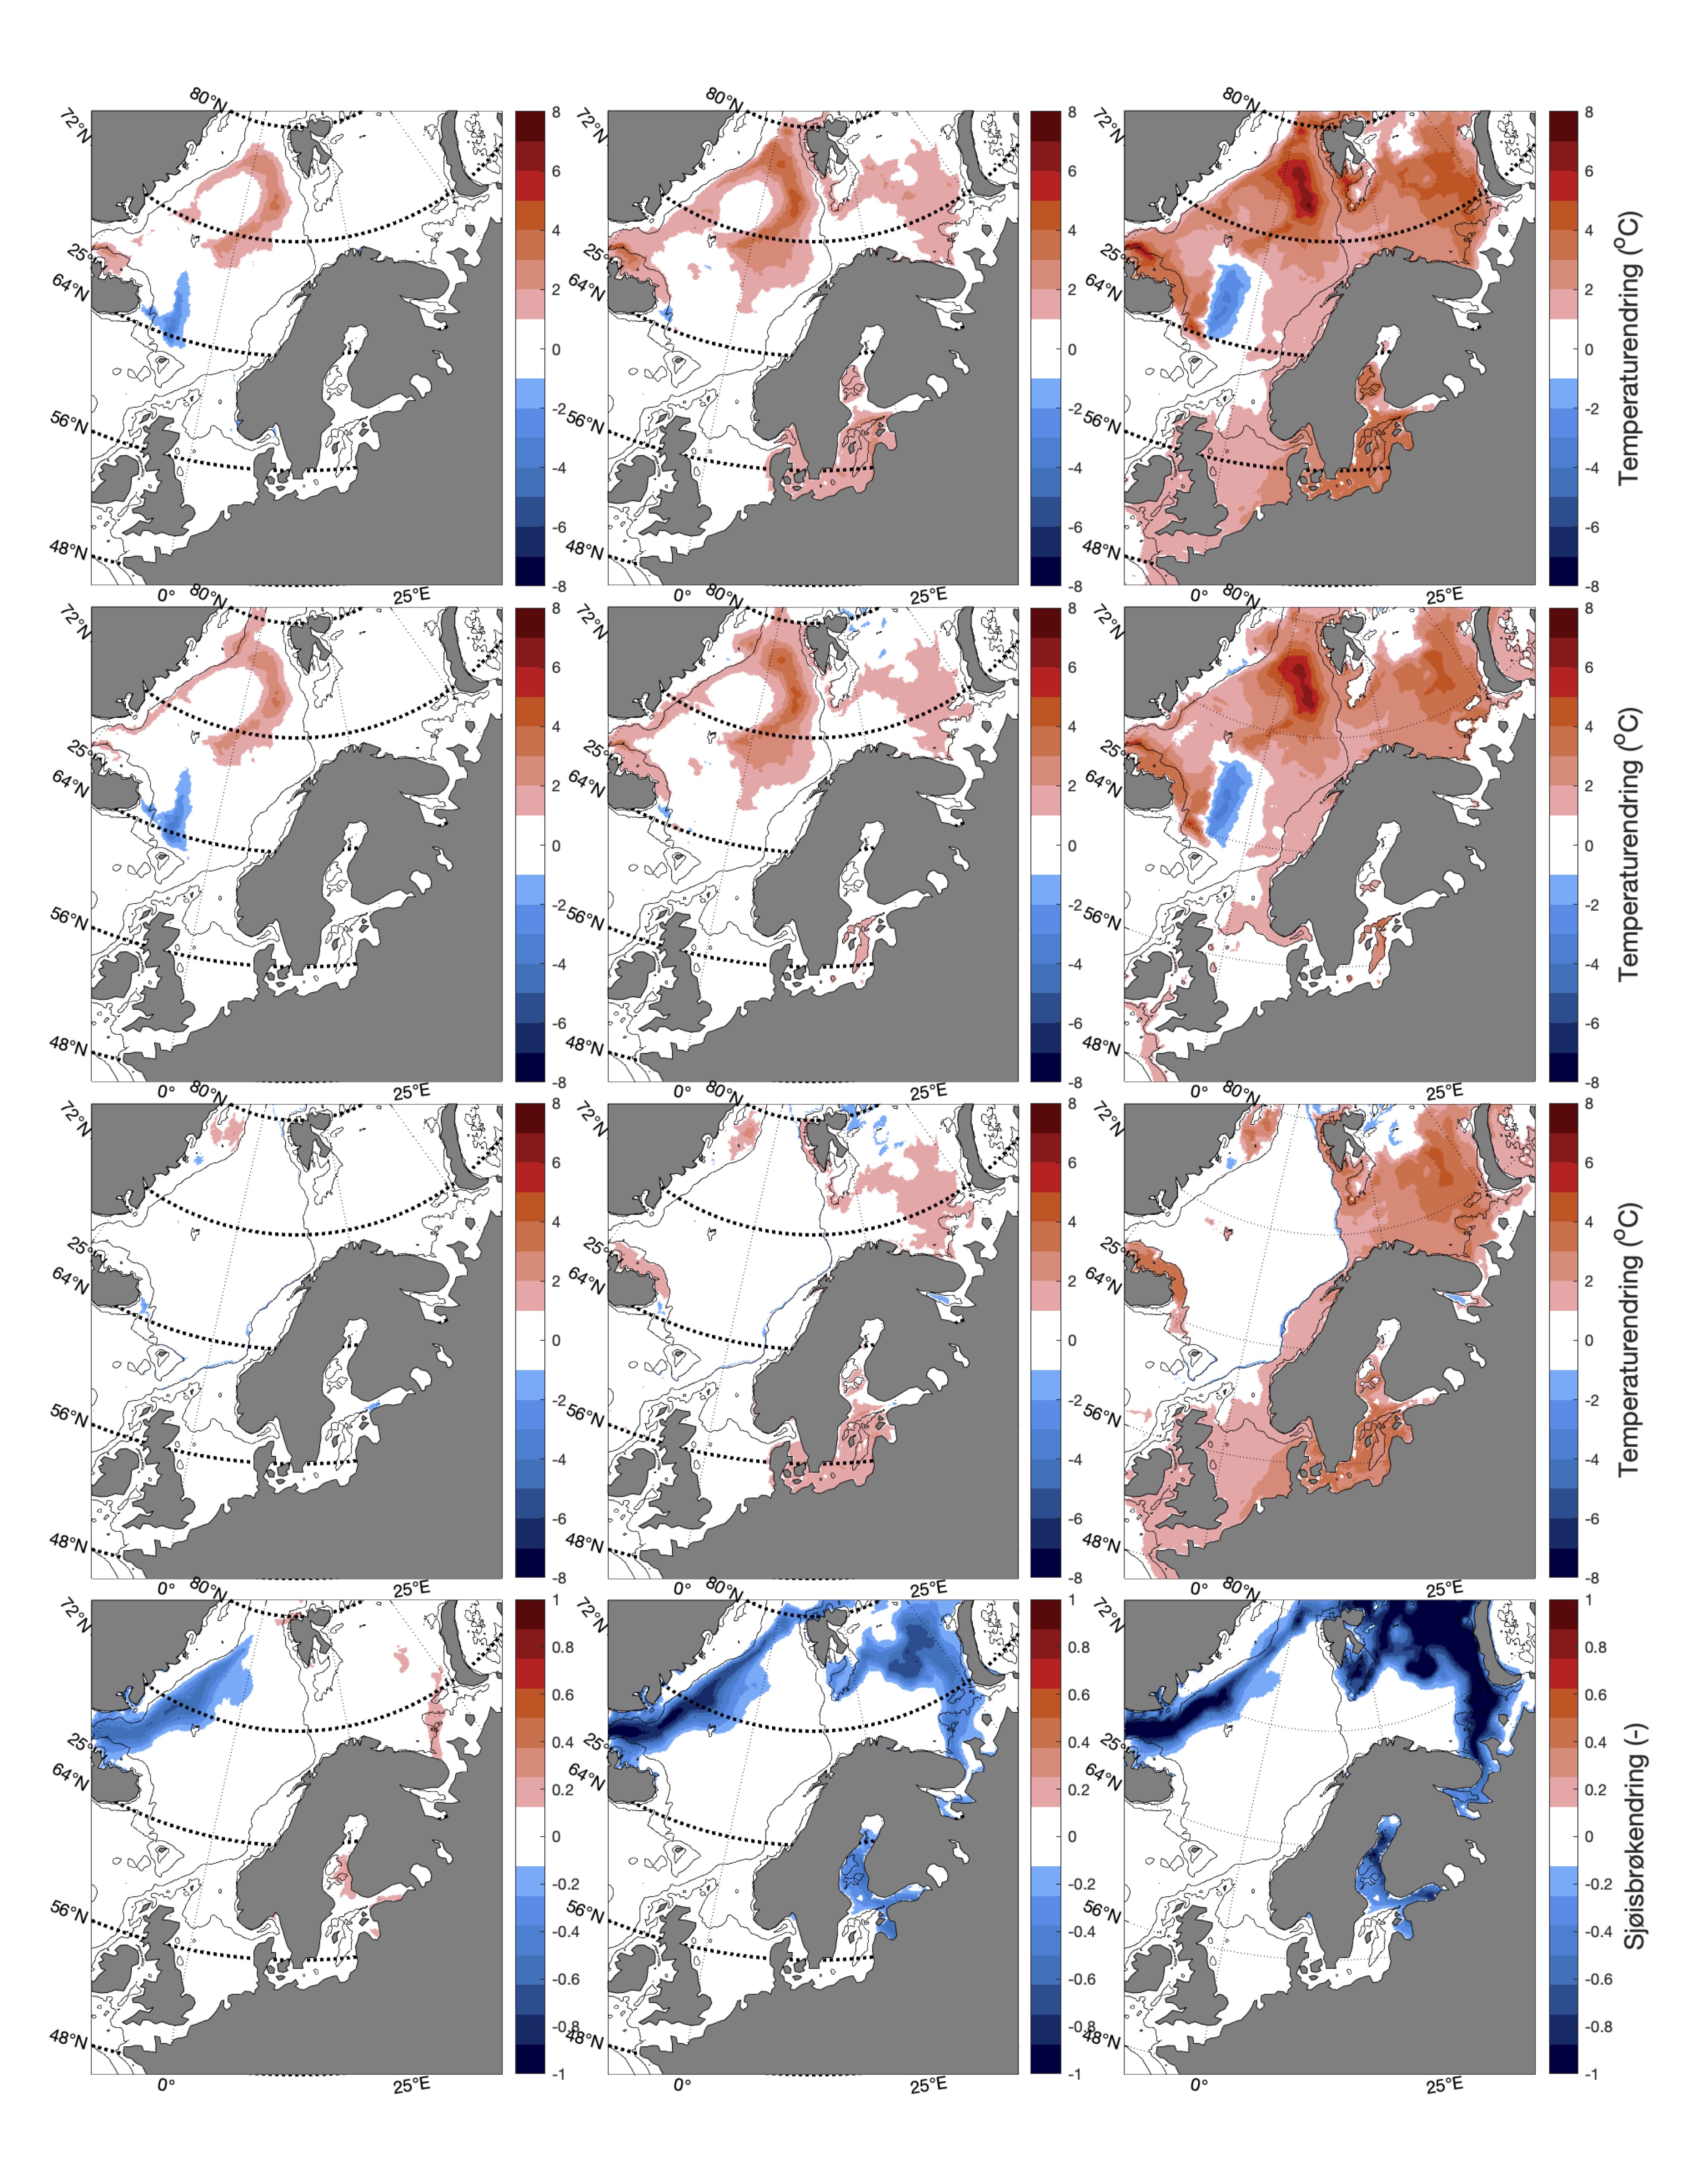 Romlig fordeling av trender i temperatur (◦C) på overflaten, 100 m og bunn, samt iskonsentrasjon i mars for SSP1-2.6, SSP2-4.5, og SSP5-8.5 (venstre-høyre) i perioden 2015-2100.